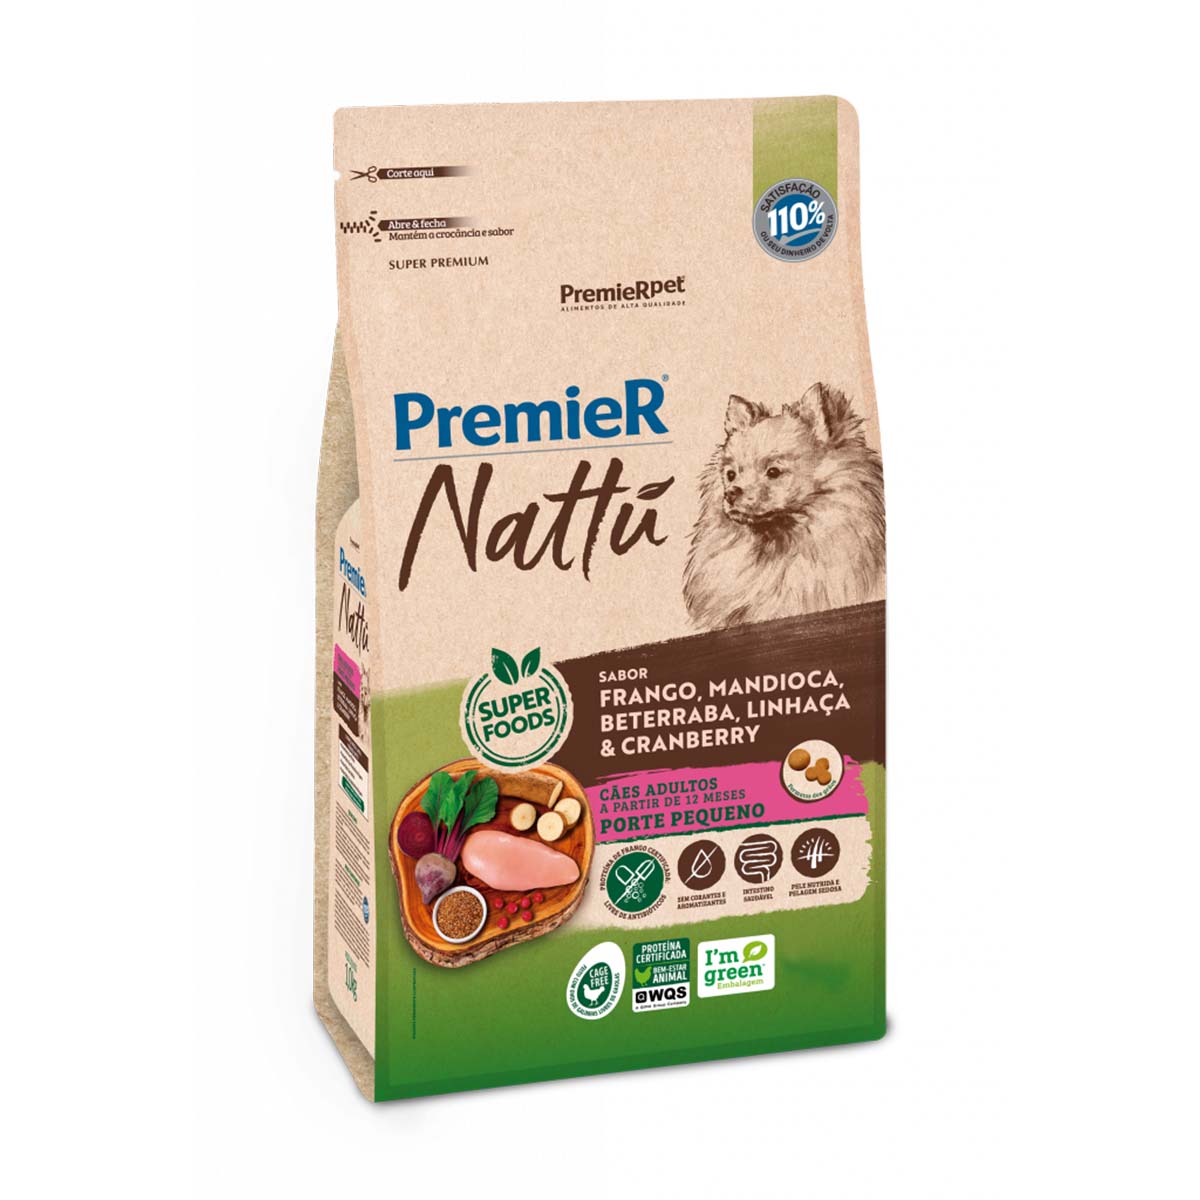 Ração PremieR Nattu Cães Adultos Porte Pequeno sabor Mandioca 2,5 Kg